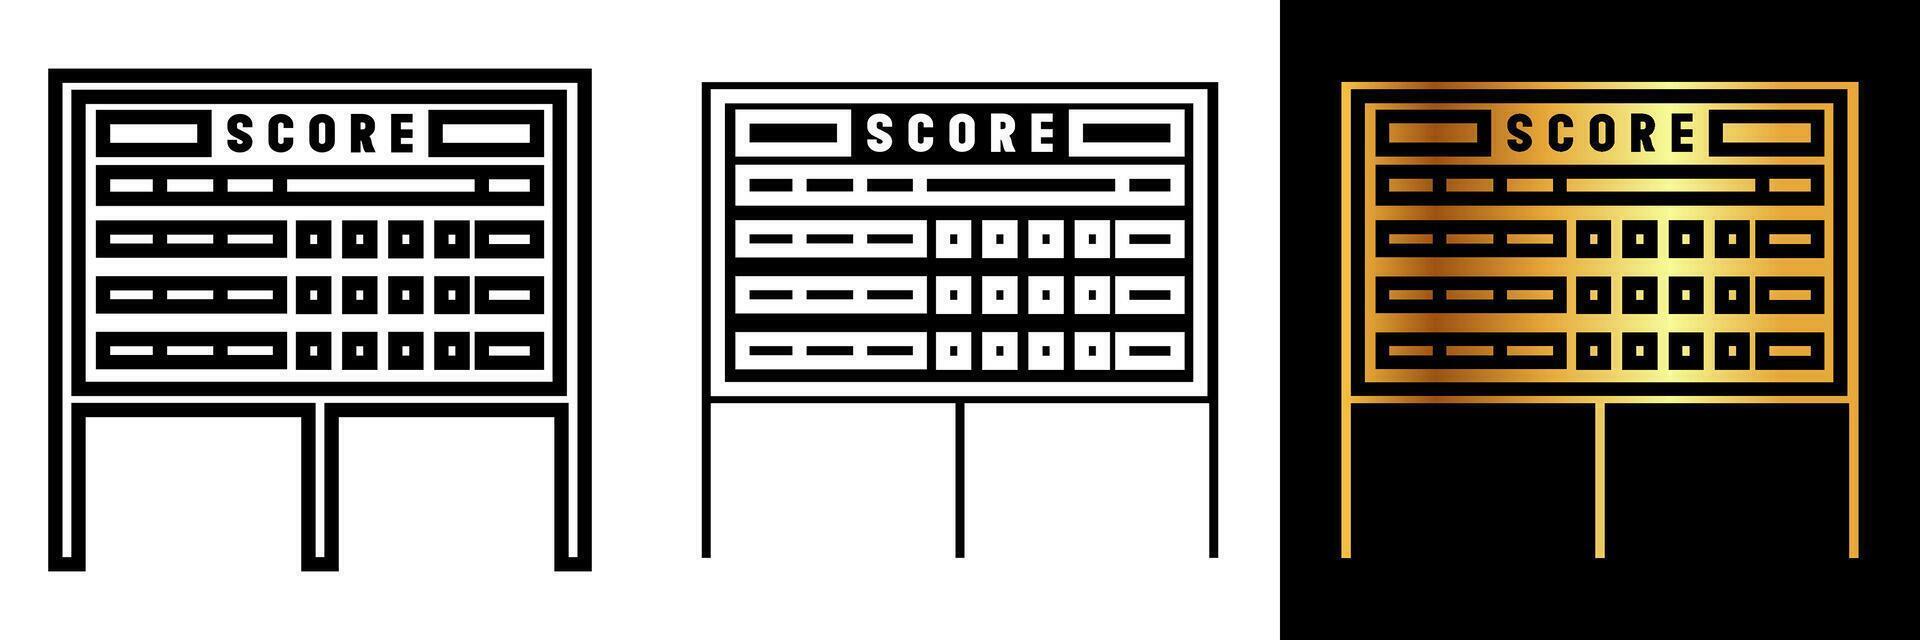 de scorebord icoon vertegenwoordigt wedstrijd, sportiviteit, en spel analyses. het is een essentieel gereedschap voor bijhouden scoort, weergeven spel voortgang, en verbeteren de competitief geest. vector